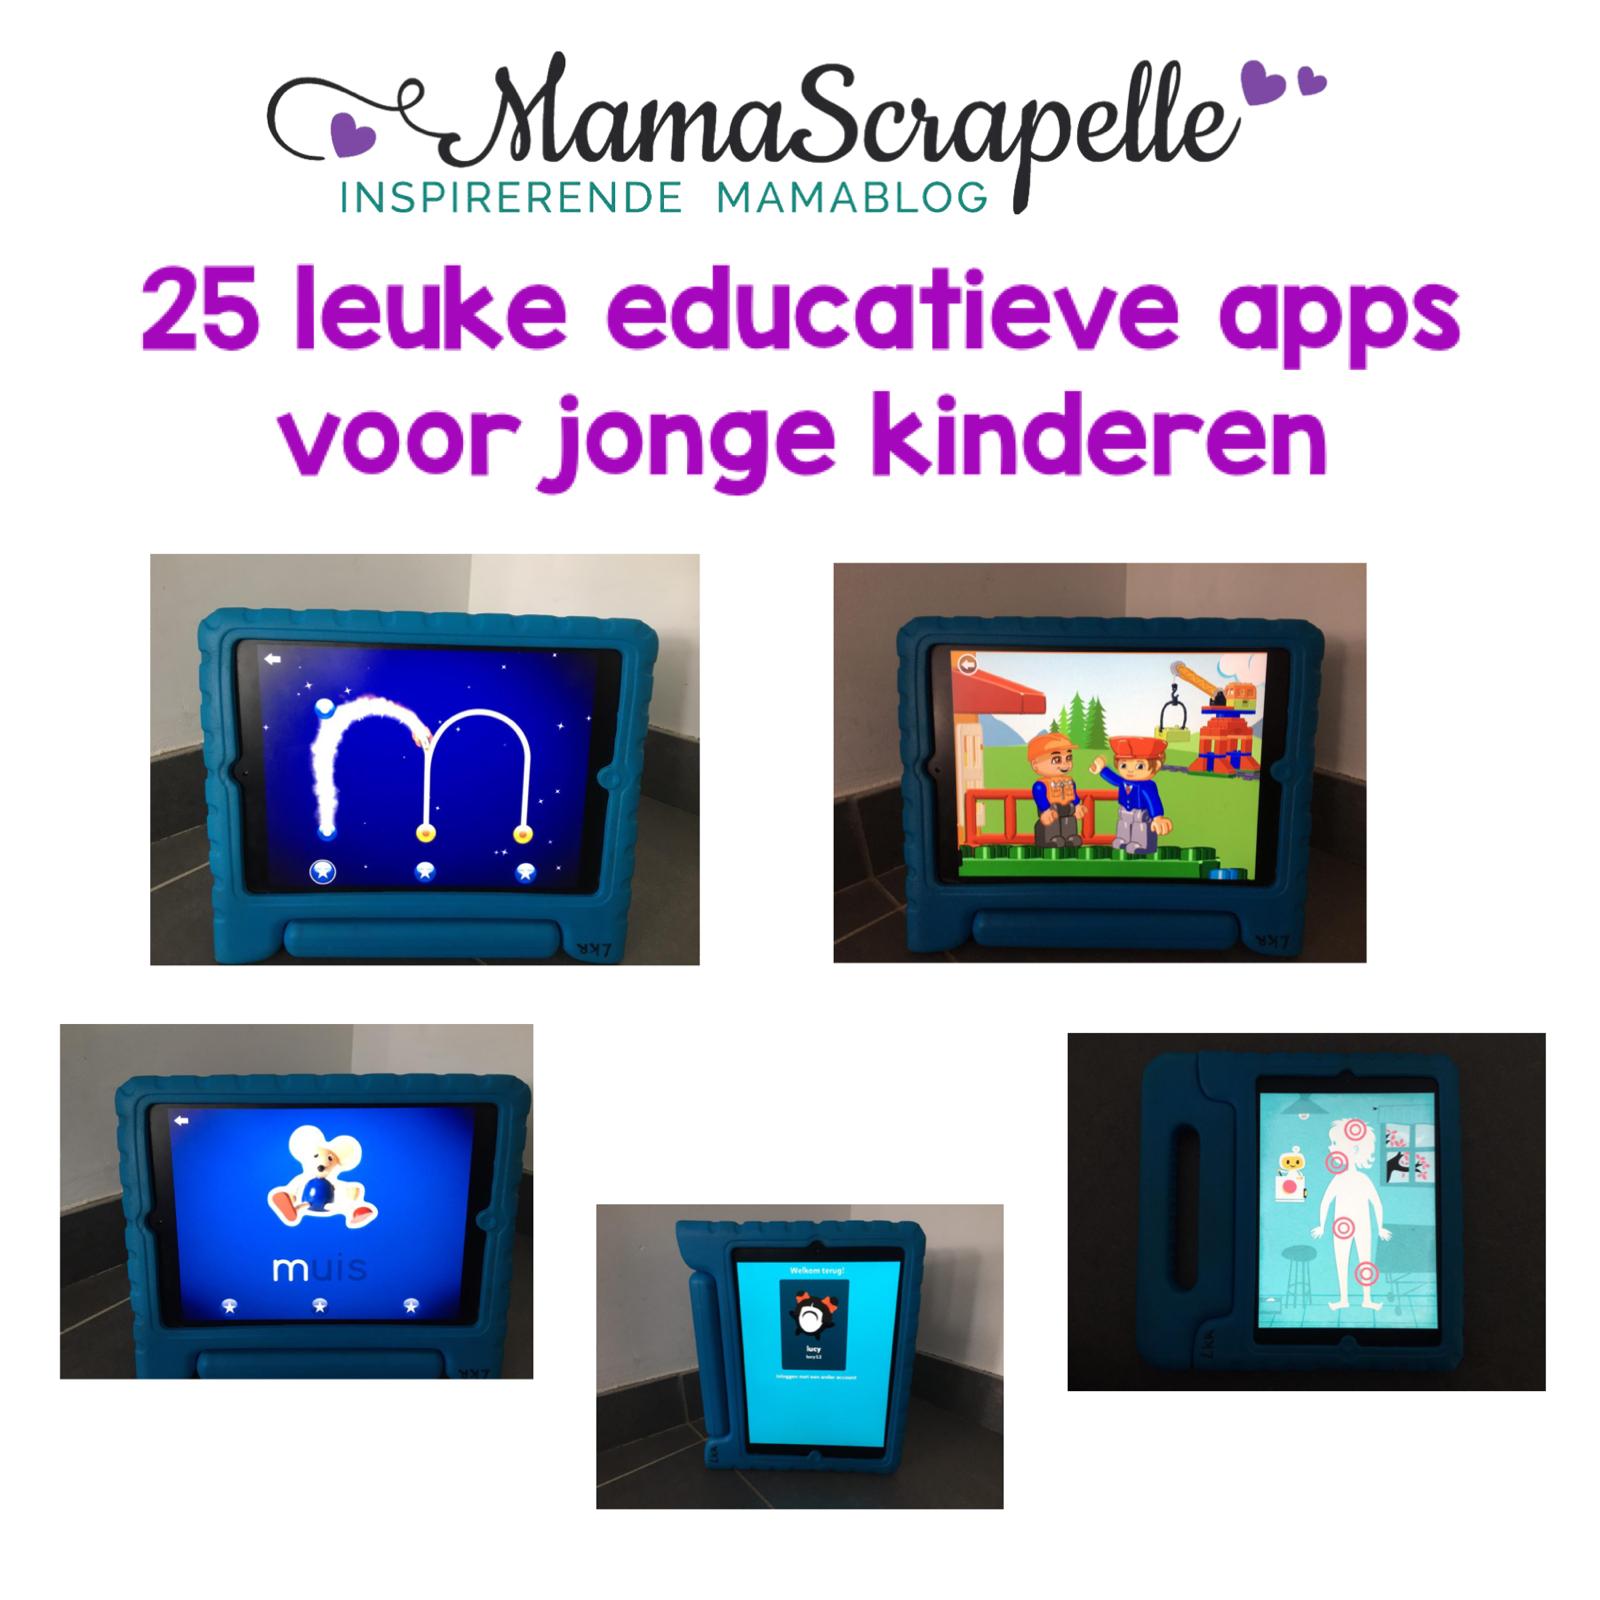 Ontmoedigd zijn Origineel Inwoner educatieve apps voor jonge kinderen een top 25 met de leukste!